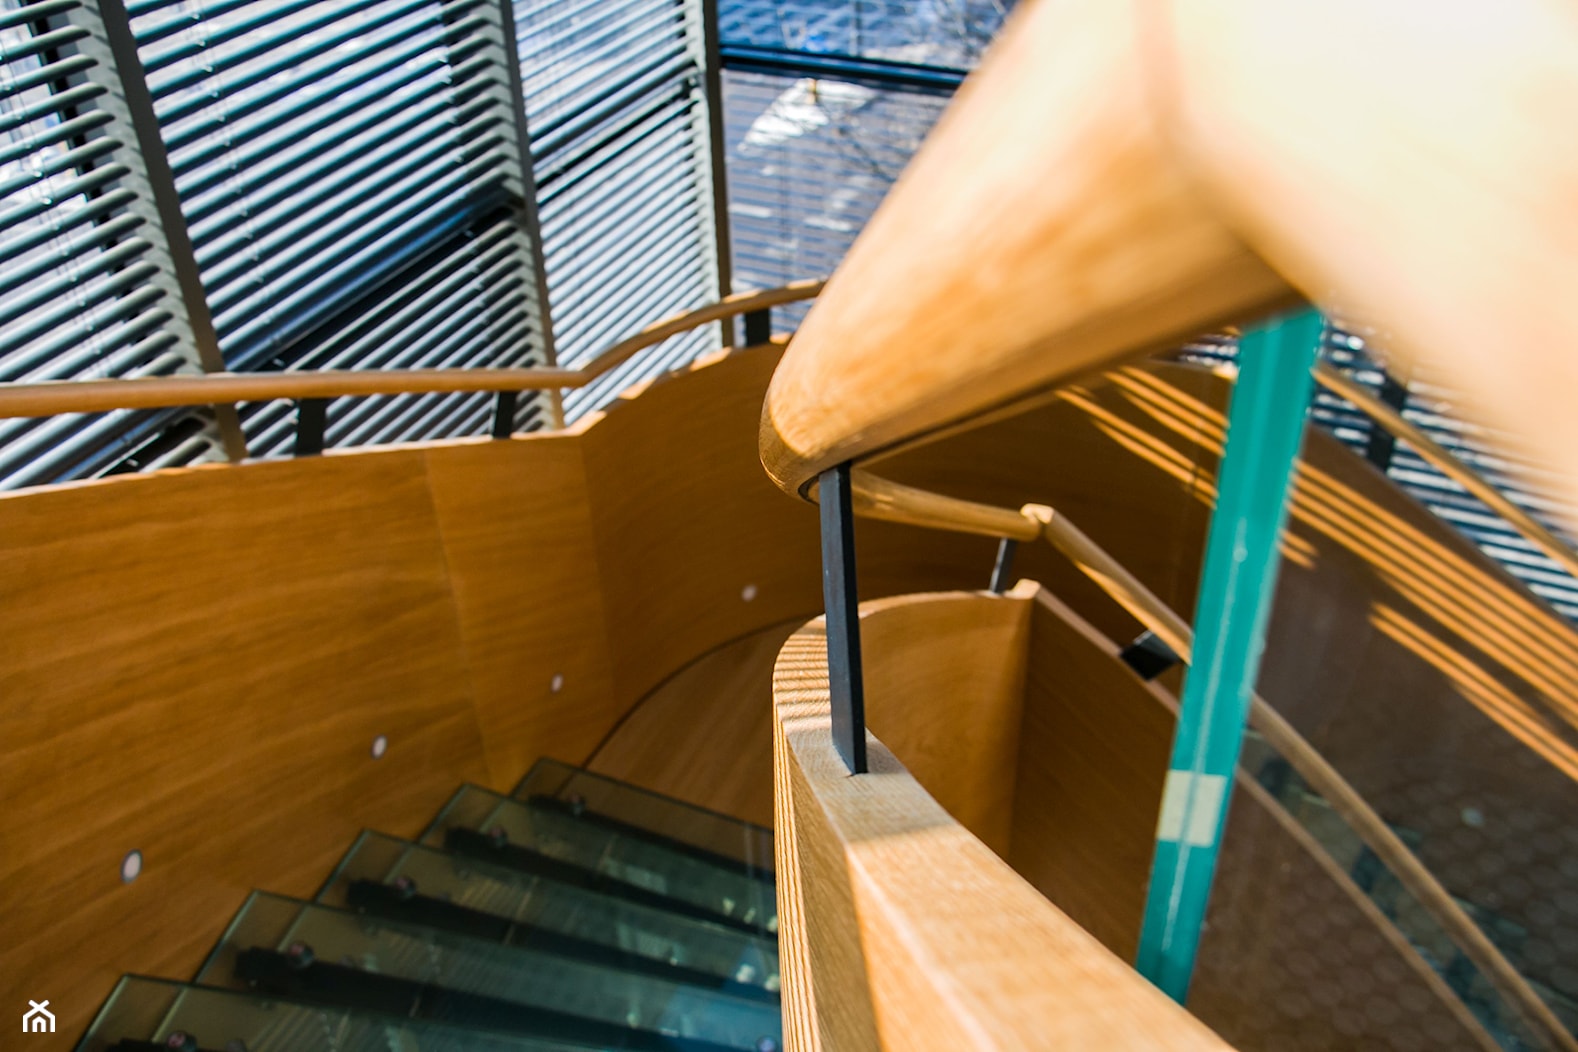 Nowoczesne schody w apartamencie hotelowym - zdjęcie od Tierspol producent schodów szklanych i całoszklanych - Homebook